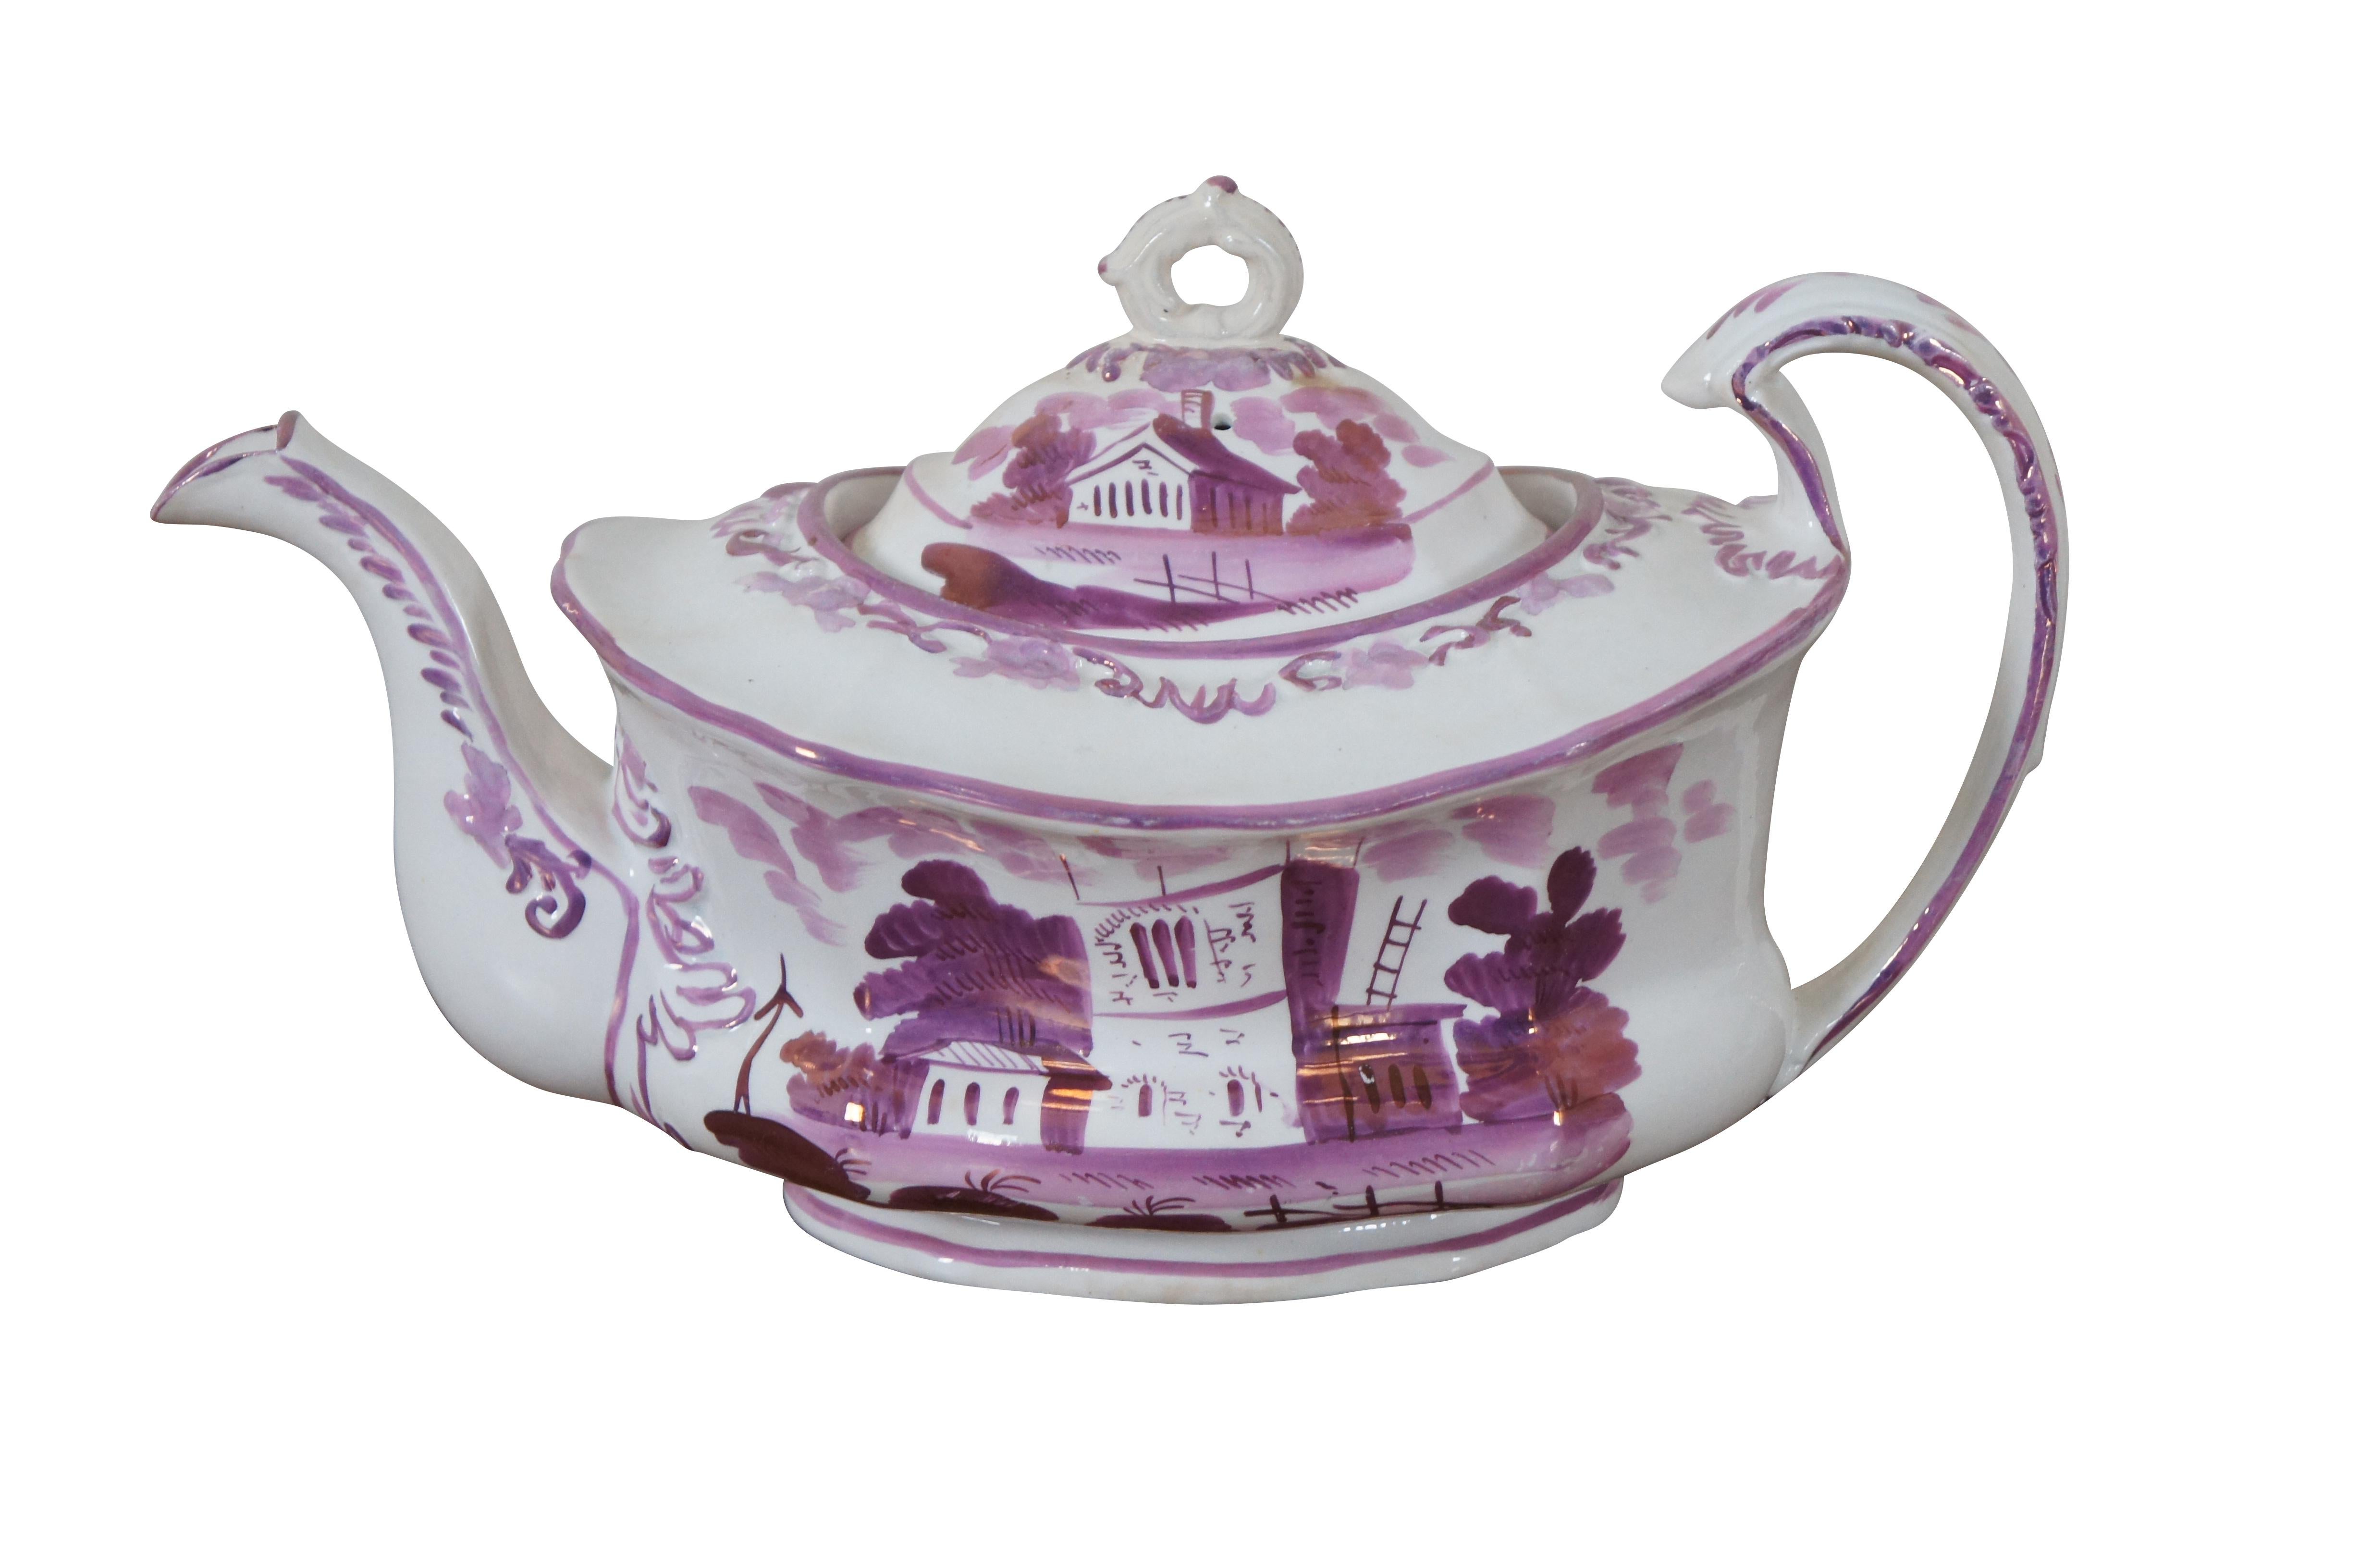 Service à thé antique en lustre du 19e siècle comprenant une théière avec couvercle, un grand sucrier avec couvercle et un pichet à crème, tous magnifiquement décorés à la main de paysages et de bâtiments en rose / violet irisé.

Dimensions